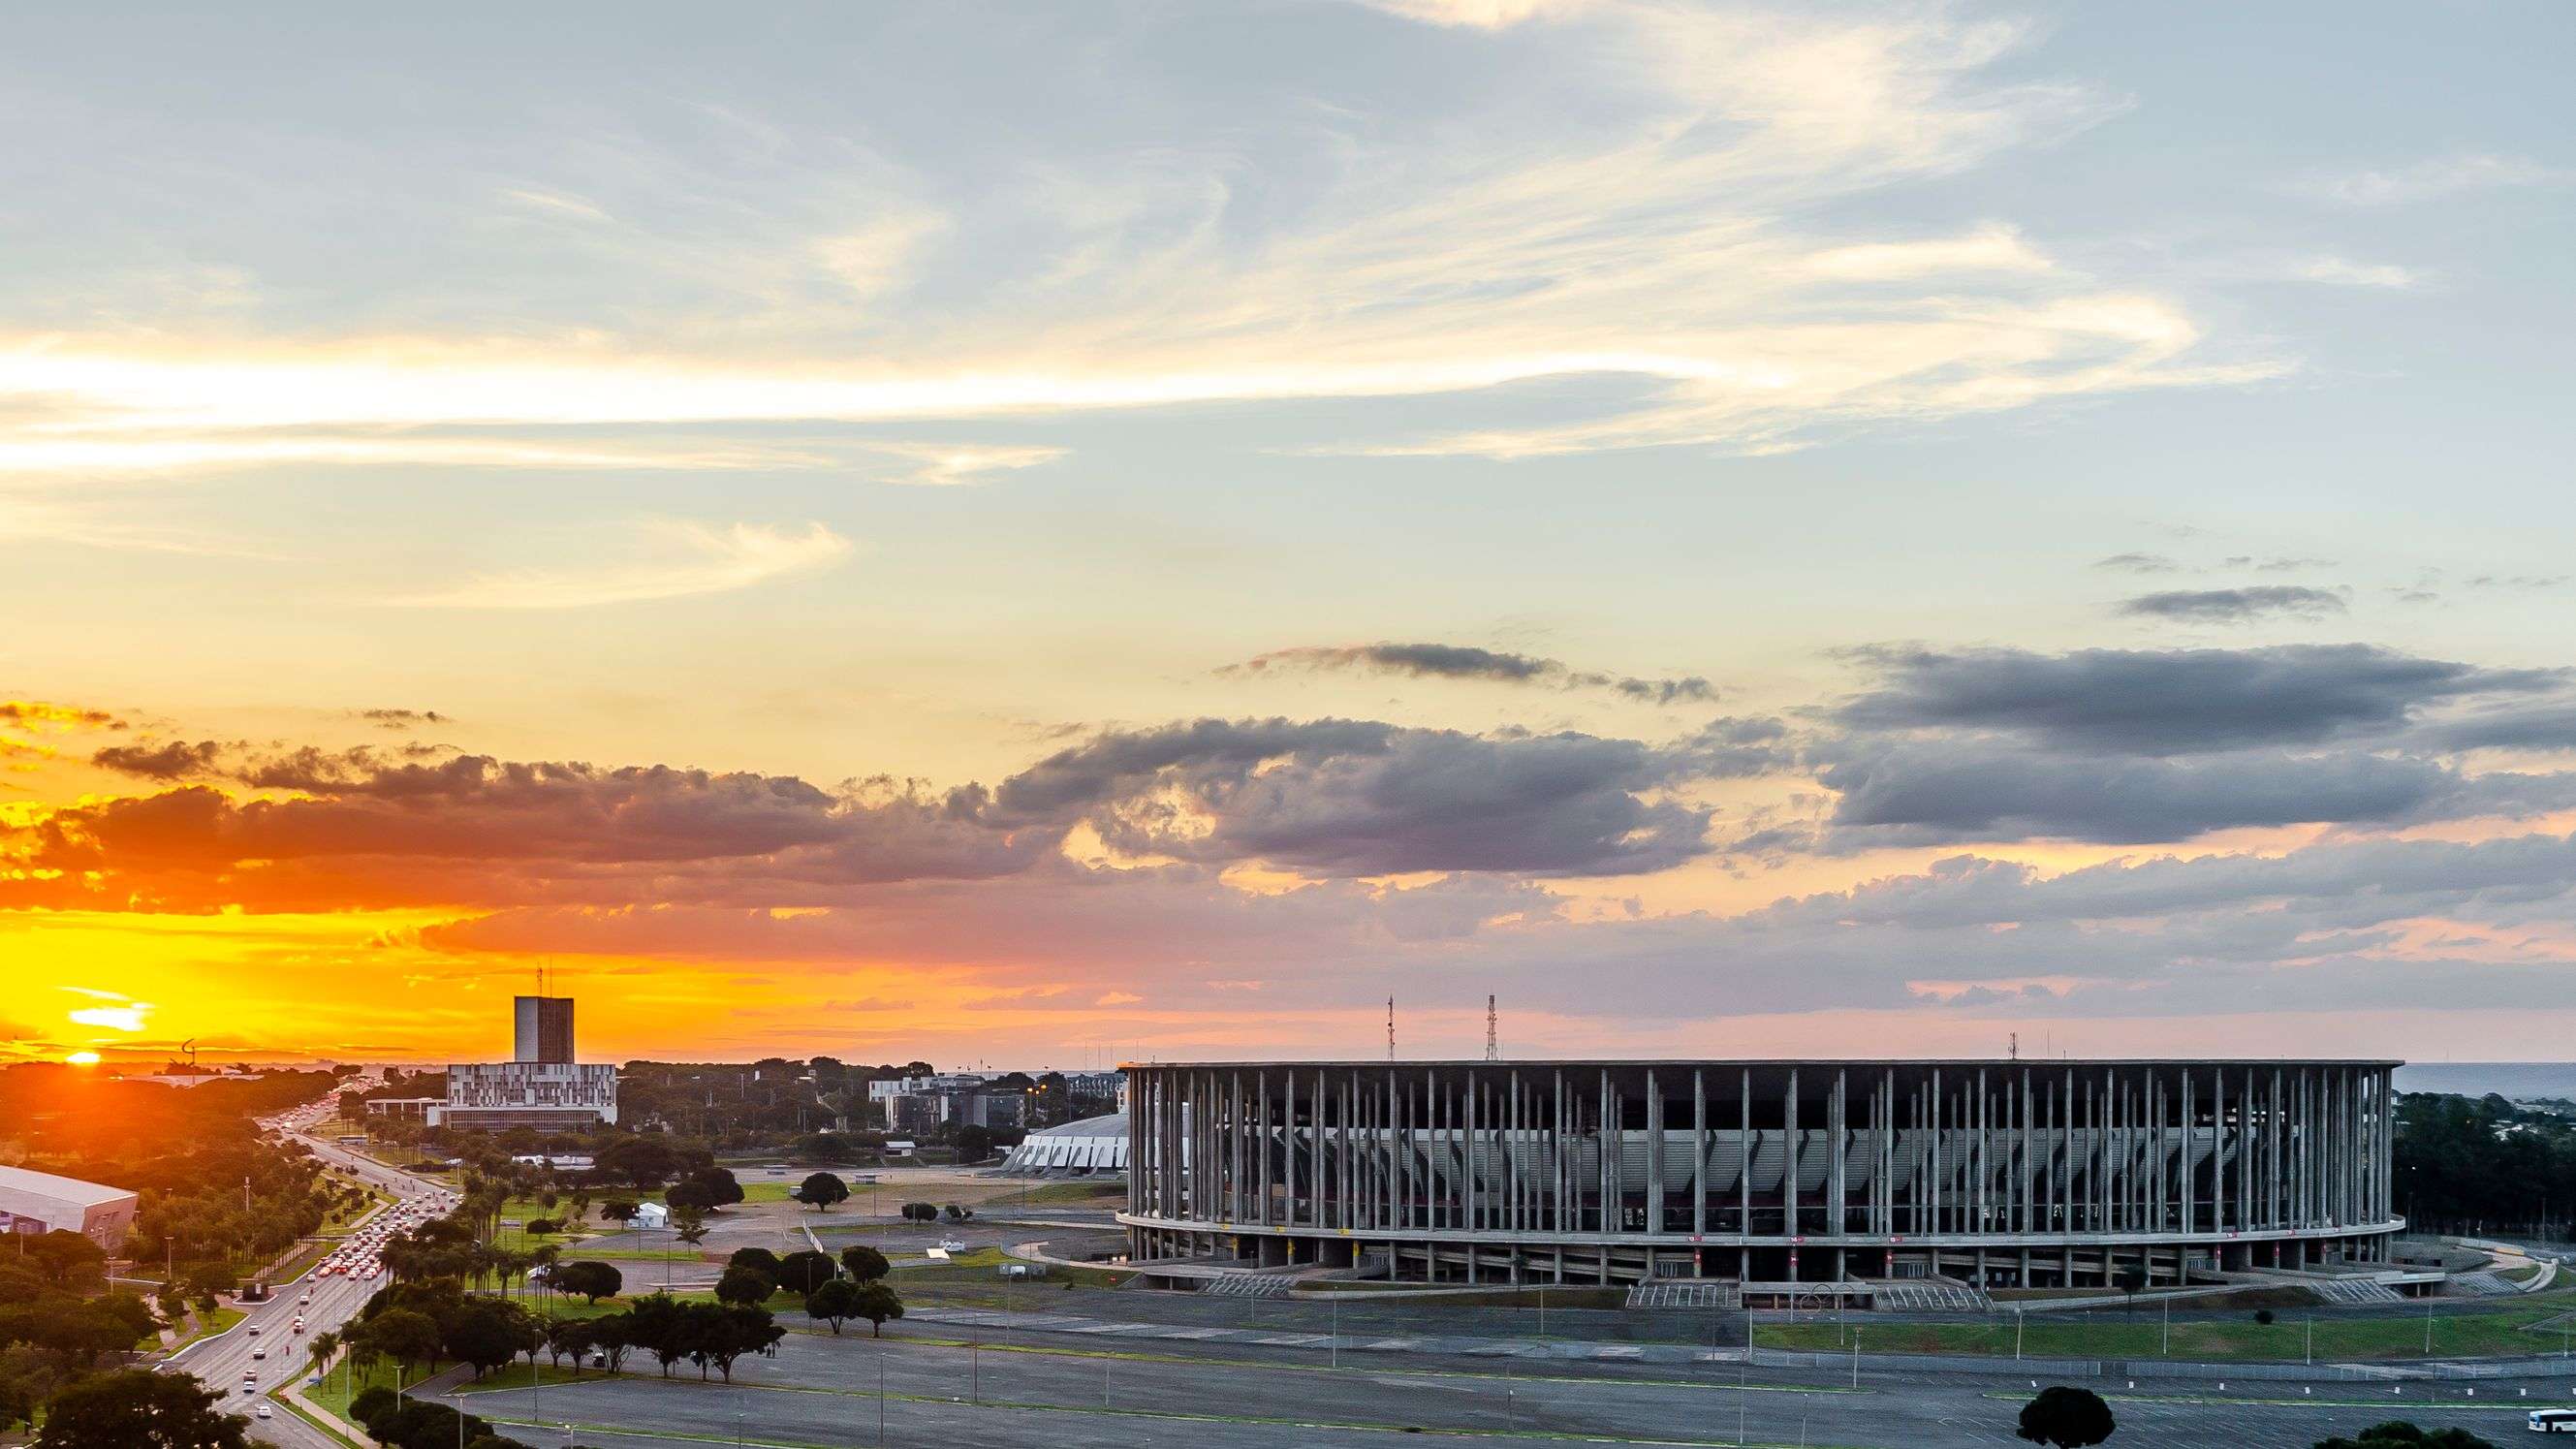 Estádio Mané Garrincha - Brasília, DF - 2021